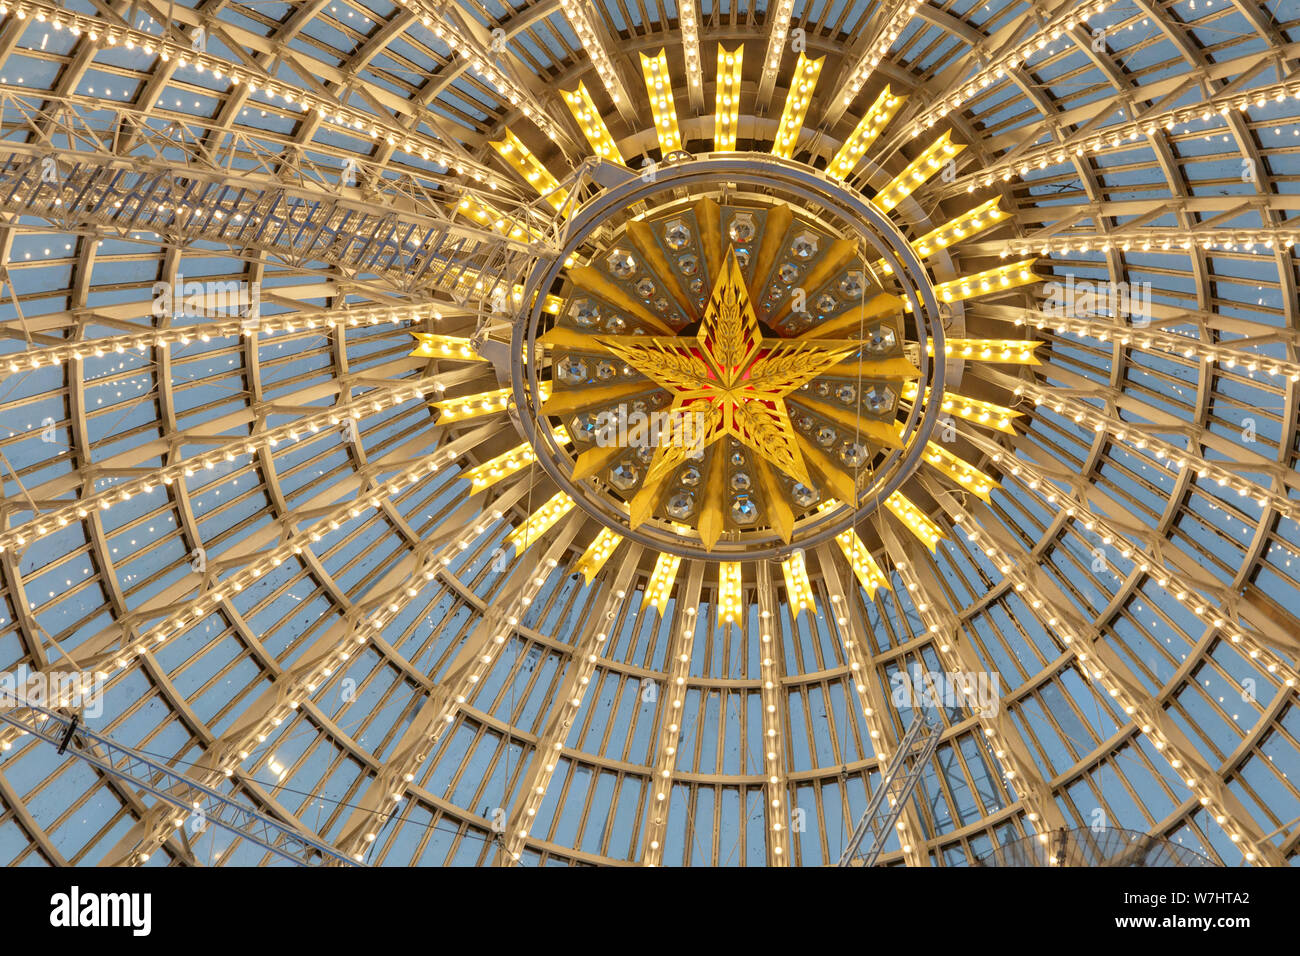 Moscou, Russie - le 28 novembre 2018 : dôme en verre de l'espace Cosmos pavilion à VDNH - Exposition des réalisations de l'économie nationale. Banque D'Images